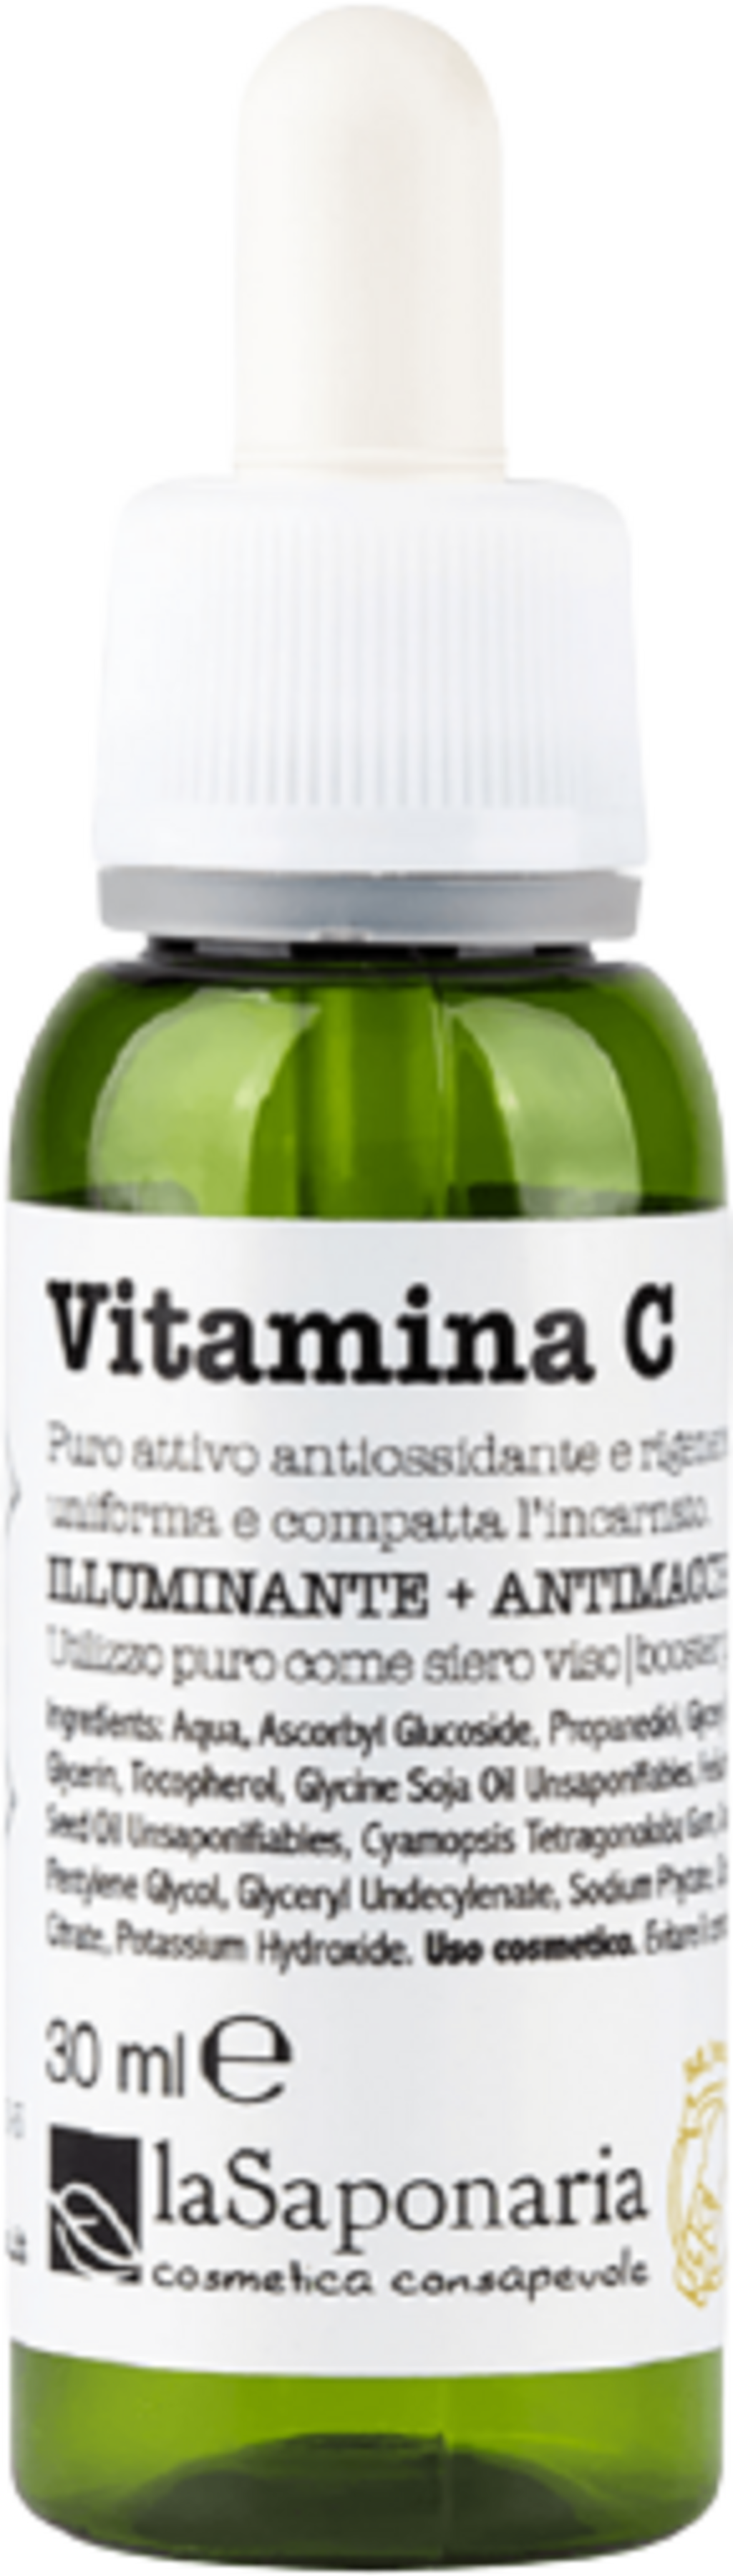 La Saponaria Attivi Puri Vitamine C - 30 ml